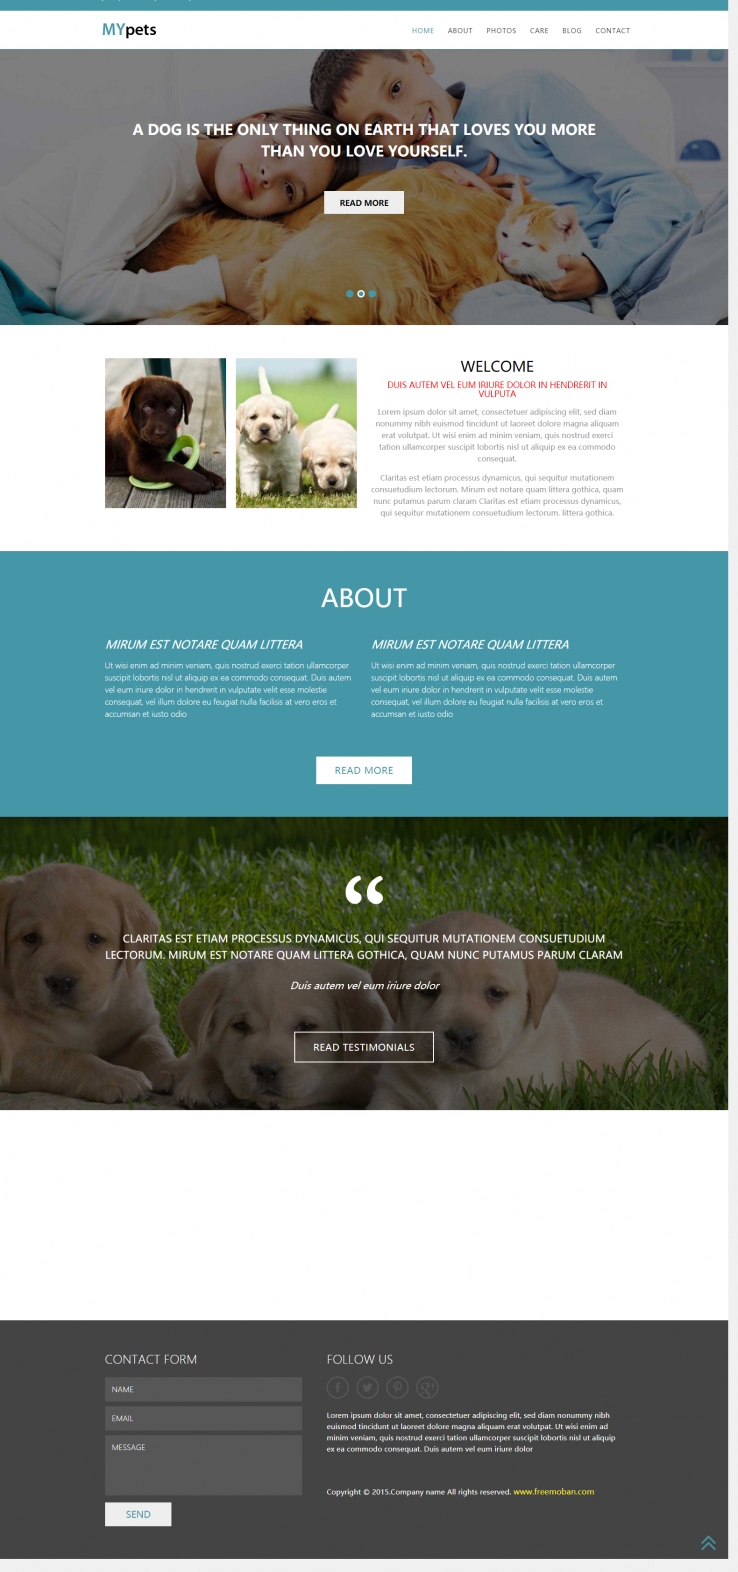 蓝色简洁风格的宠物动物企业网站模板